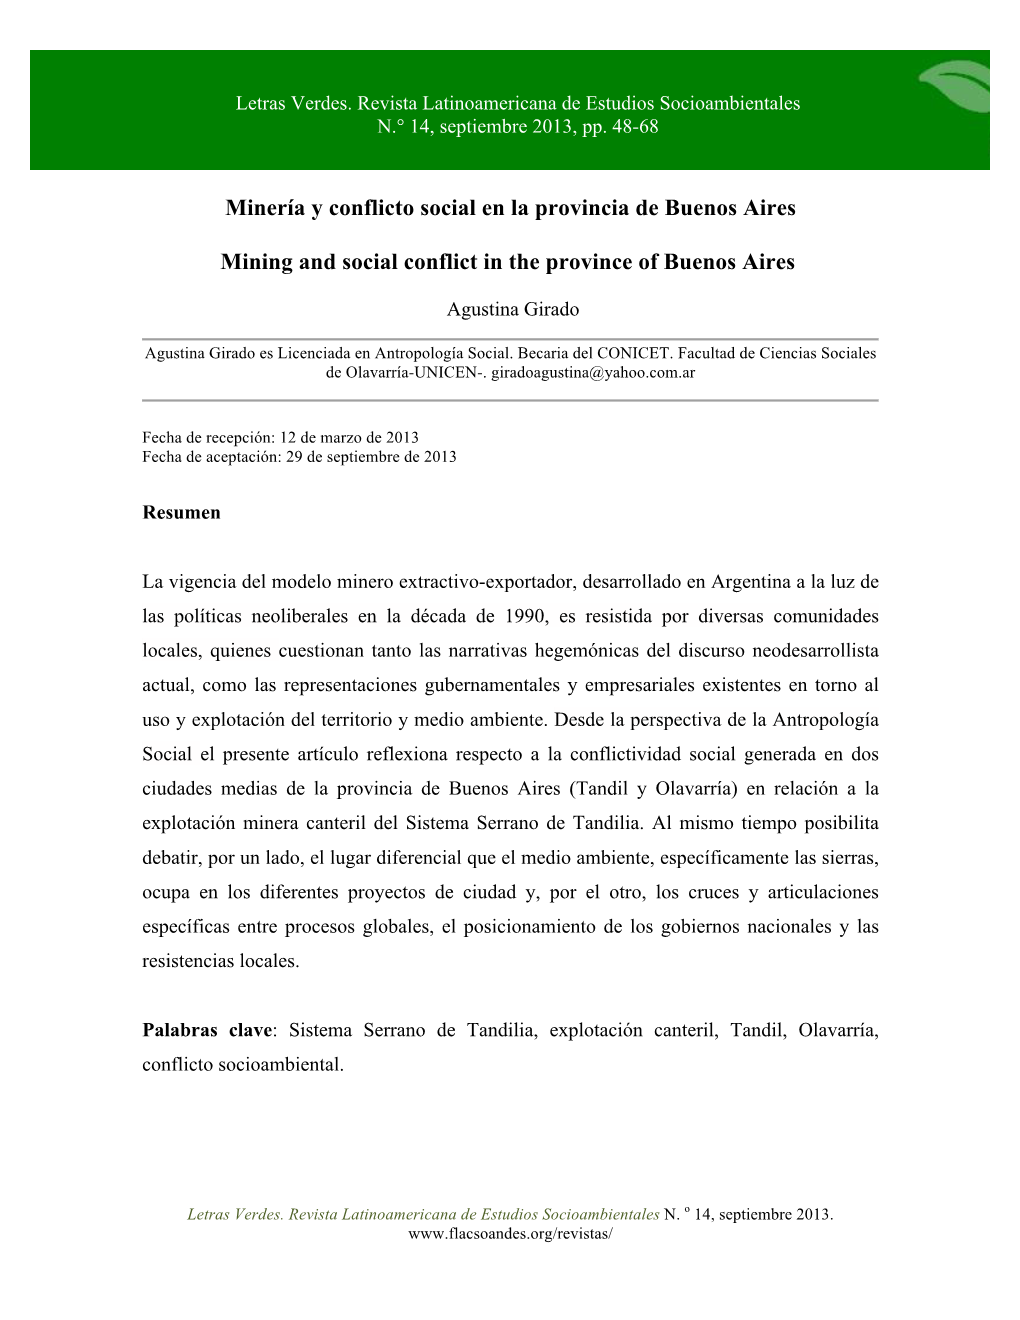 Minería Y Conflicto Social En La Provincia De Buenos Aires Mining and Social Conflict in the Province of Buenos Aires